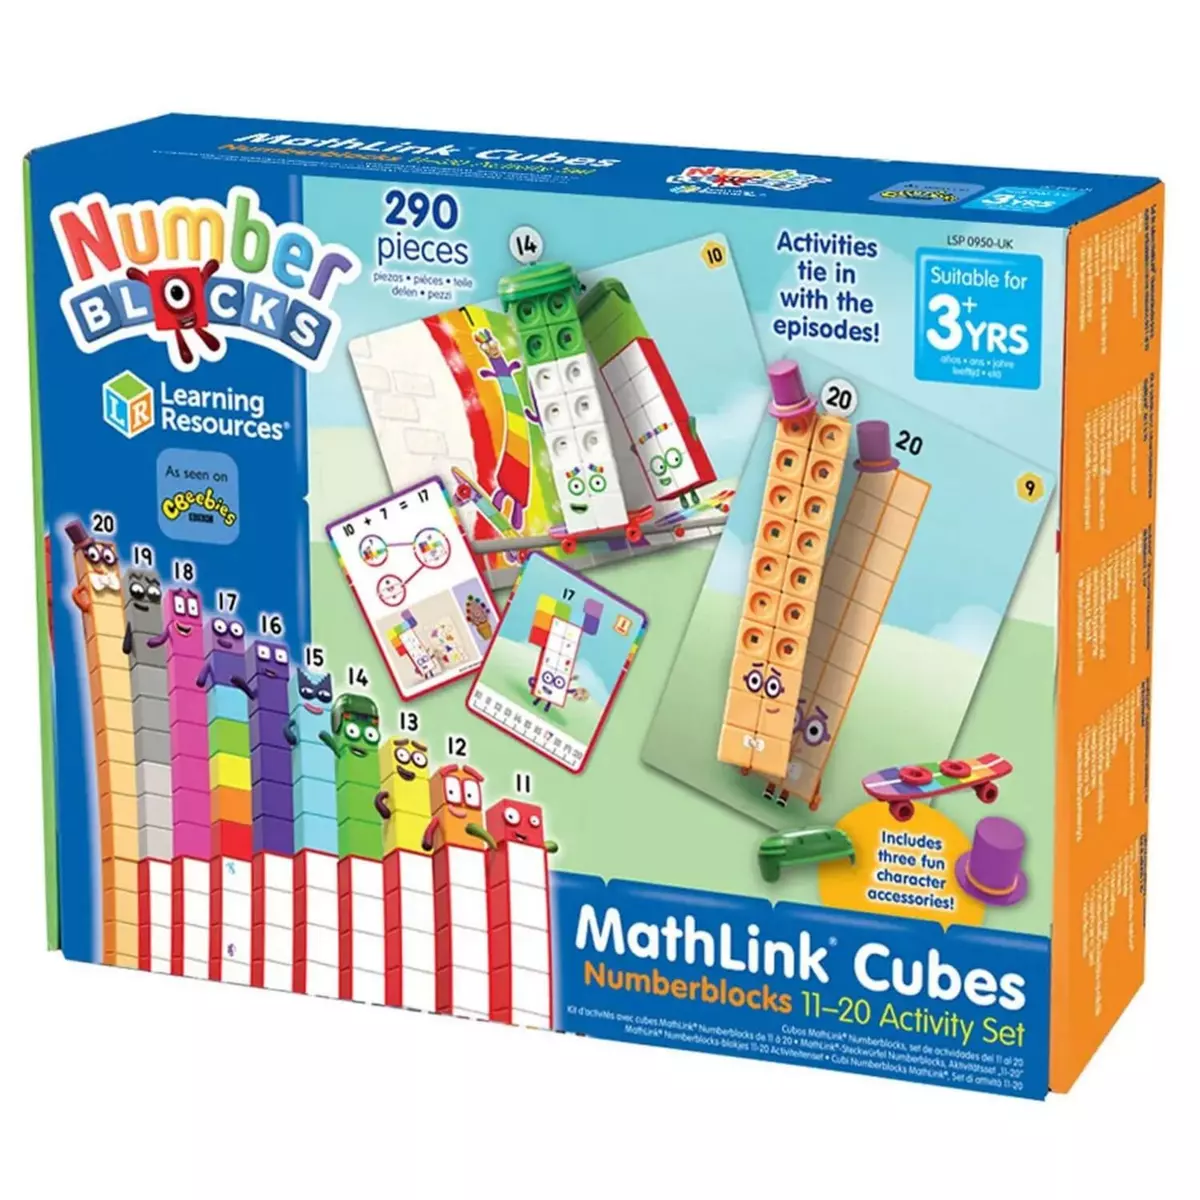  Kit d'activités avec cubes MathLink Numberblocks de 11 à 20